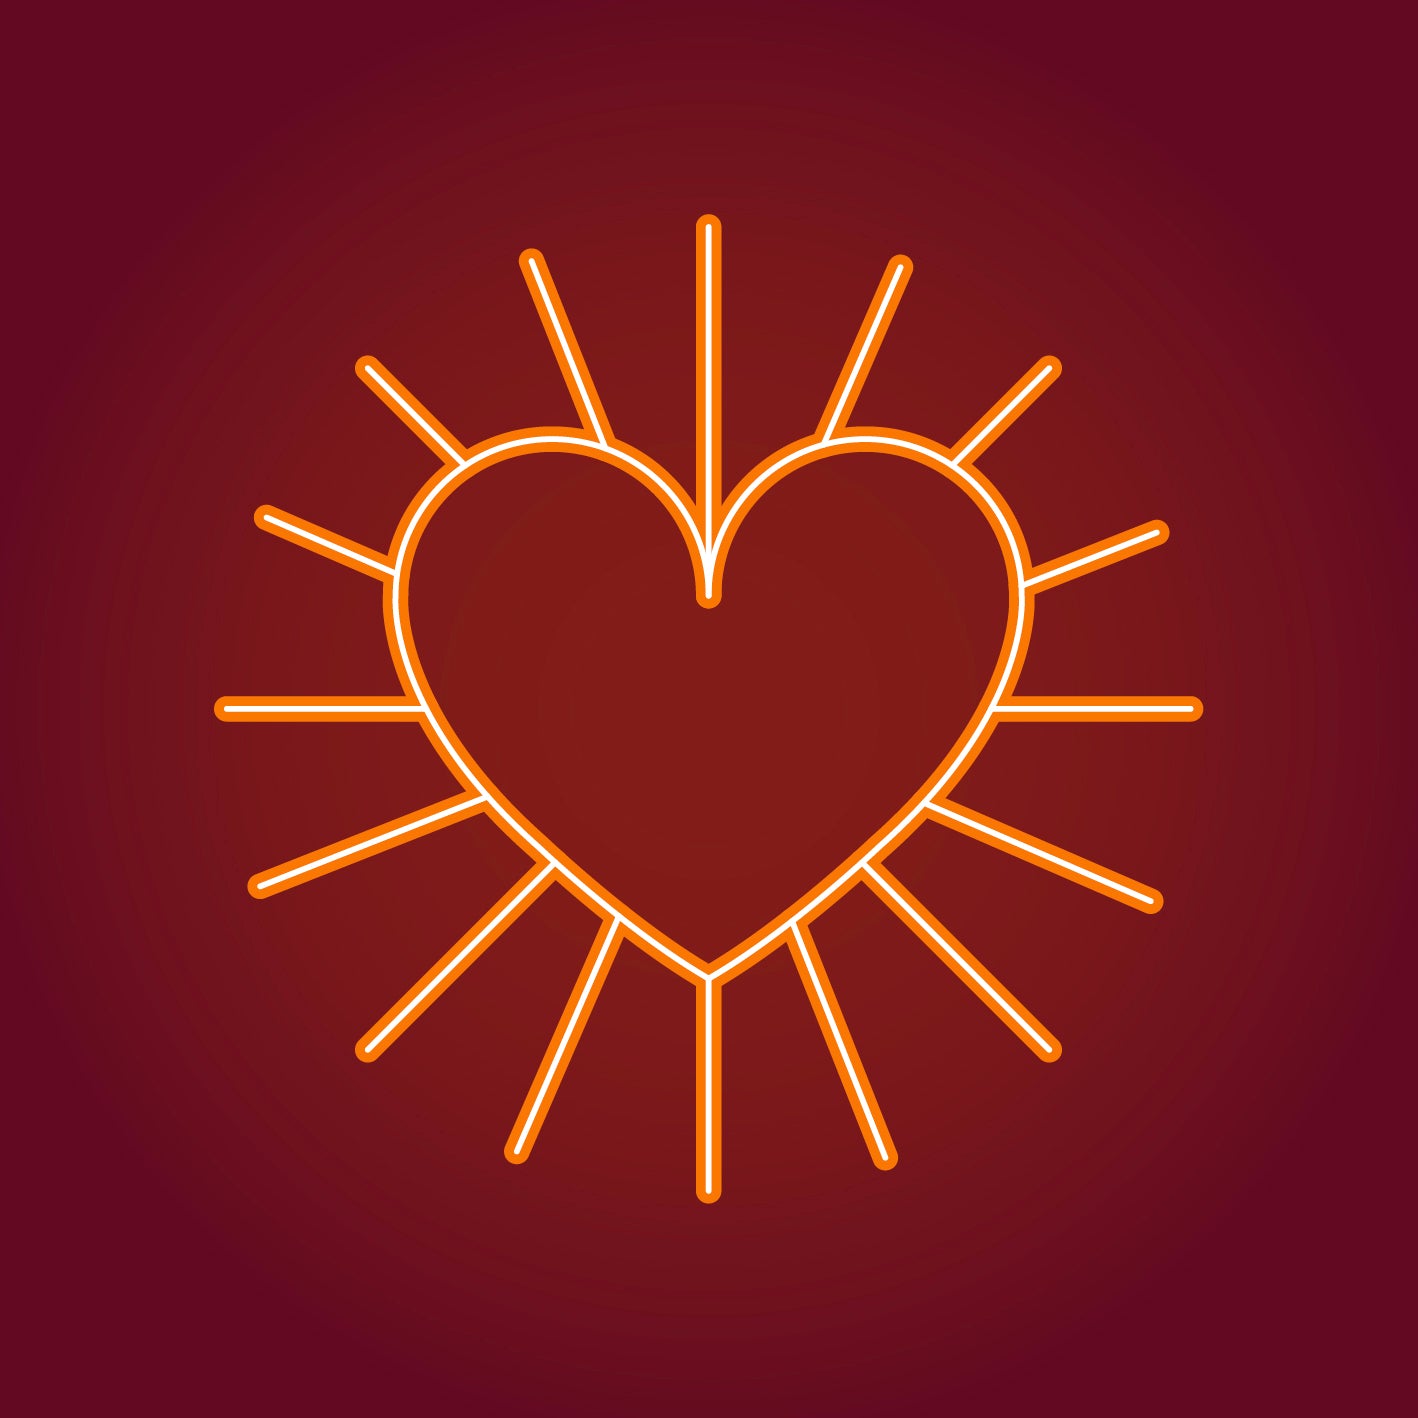 Sun heart